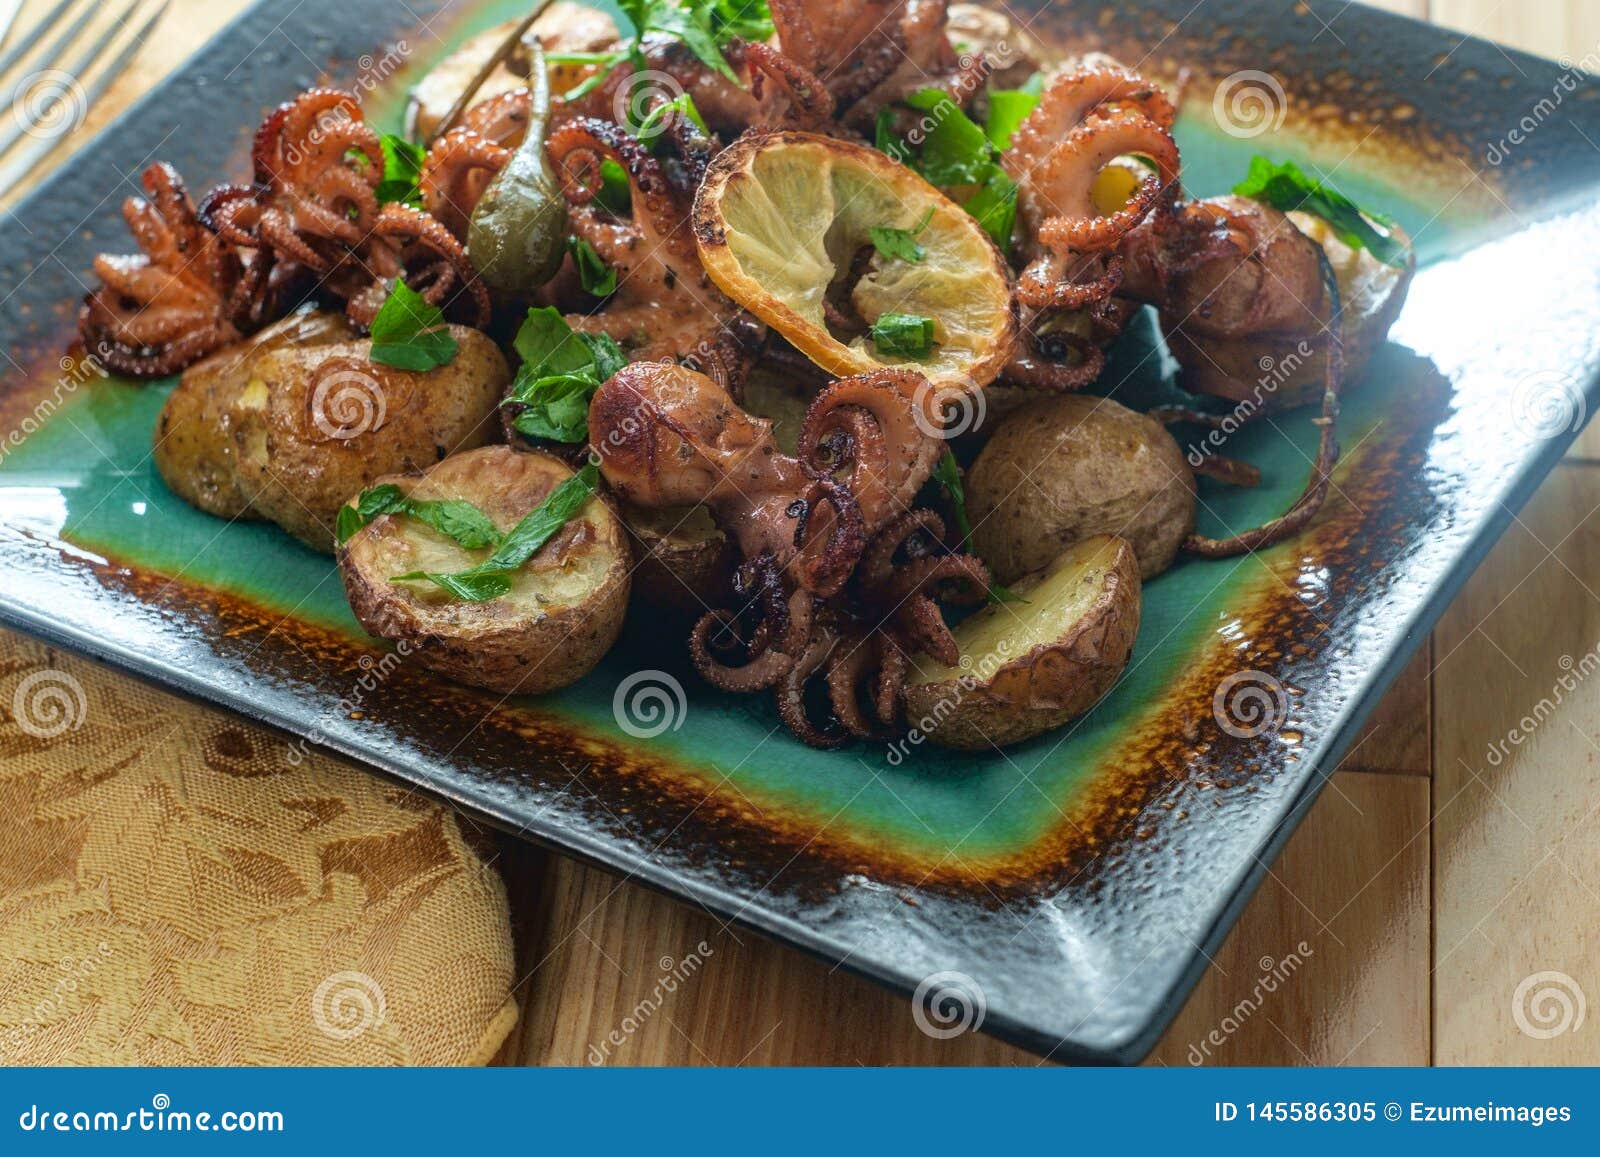 portuguese octopus a lagareiro